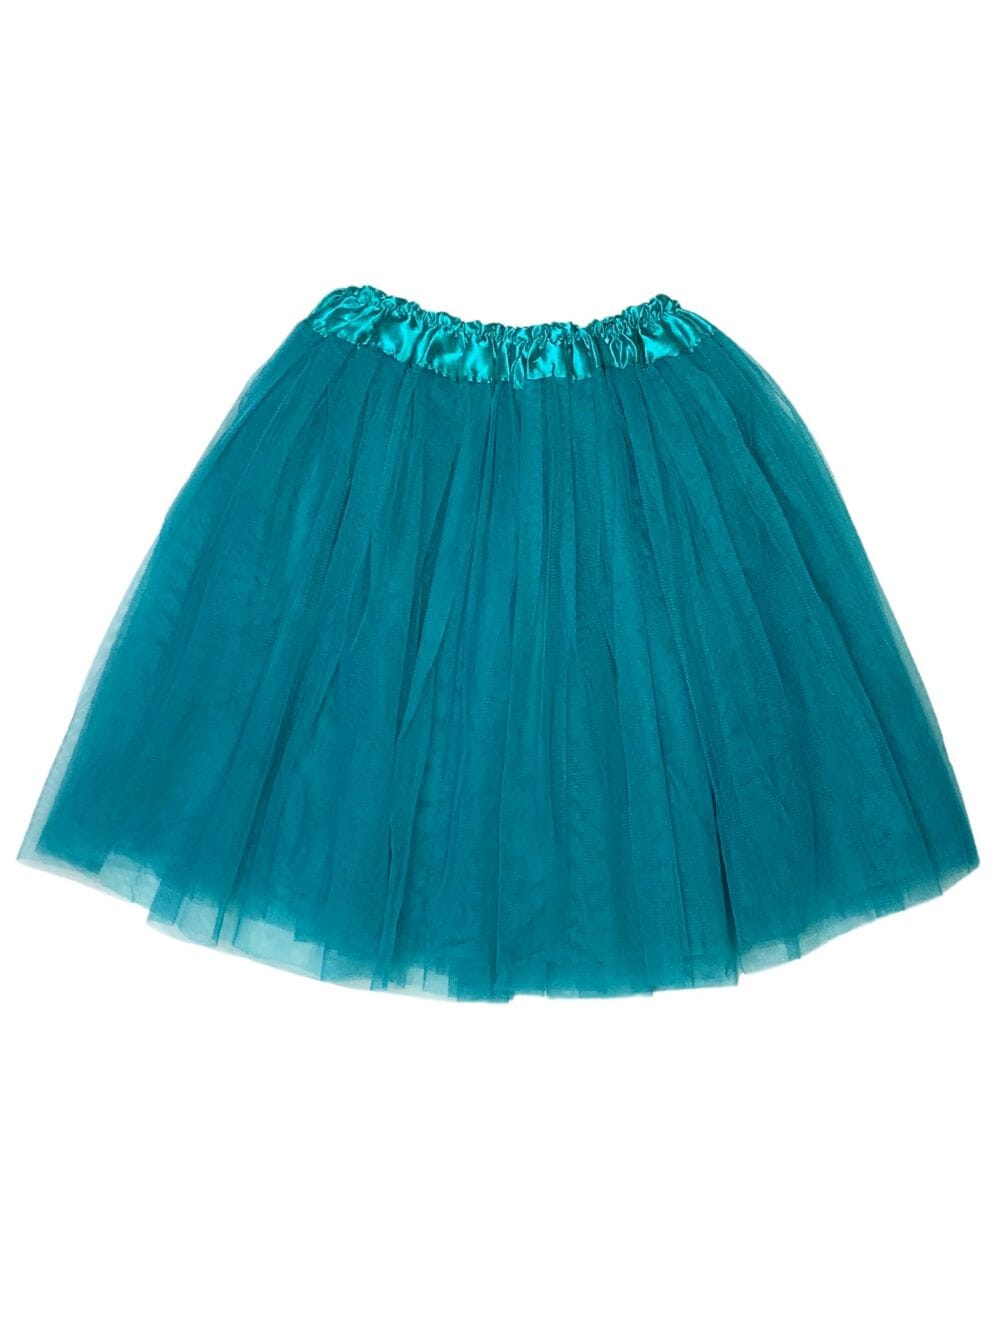 Teal Tutu Skirt for Adult - Women's Size 3-Layer Tulle Skirt Ballet Costume Dance Tutus - Sydney So Sweet